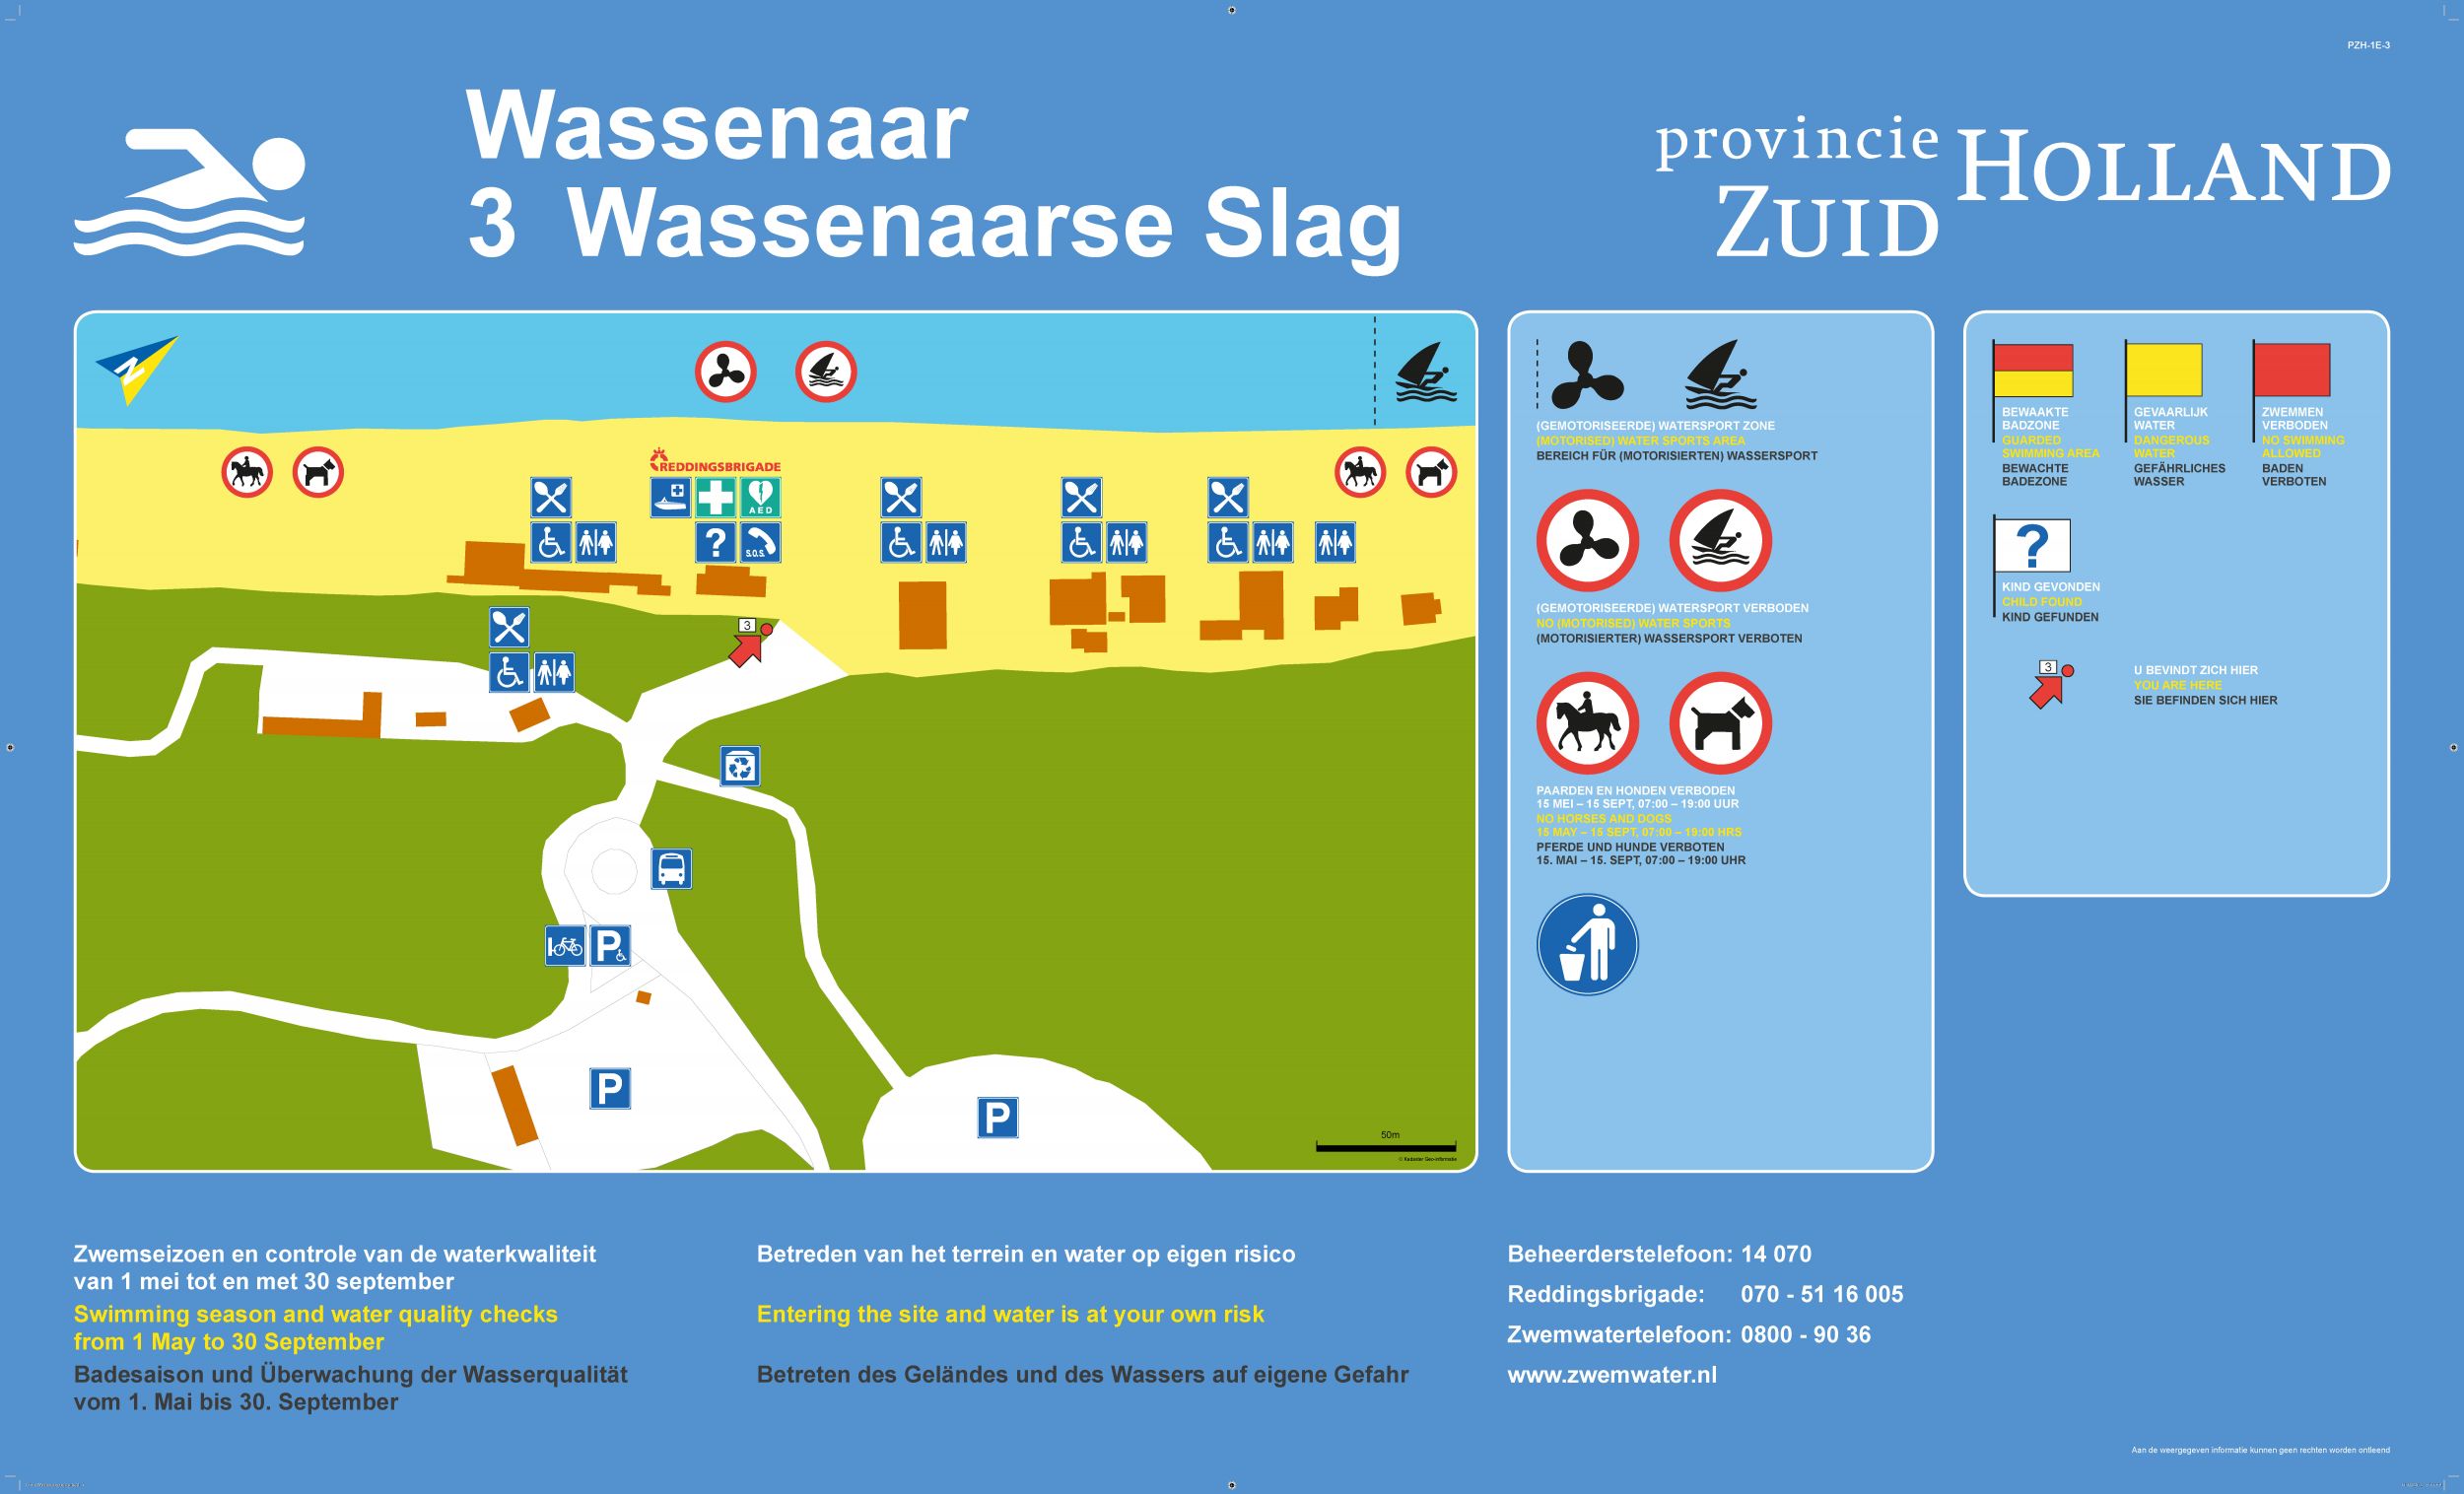 Het informatiebord bij zwemlocatie Wassenaarse Slag